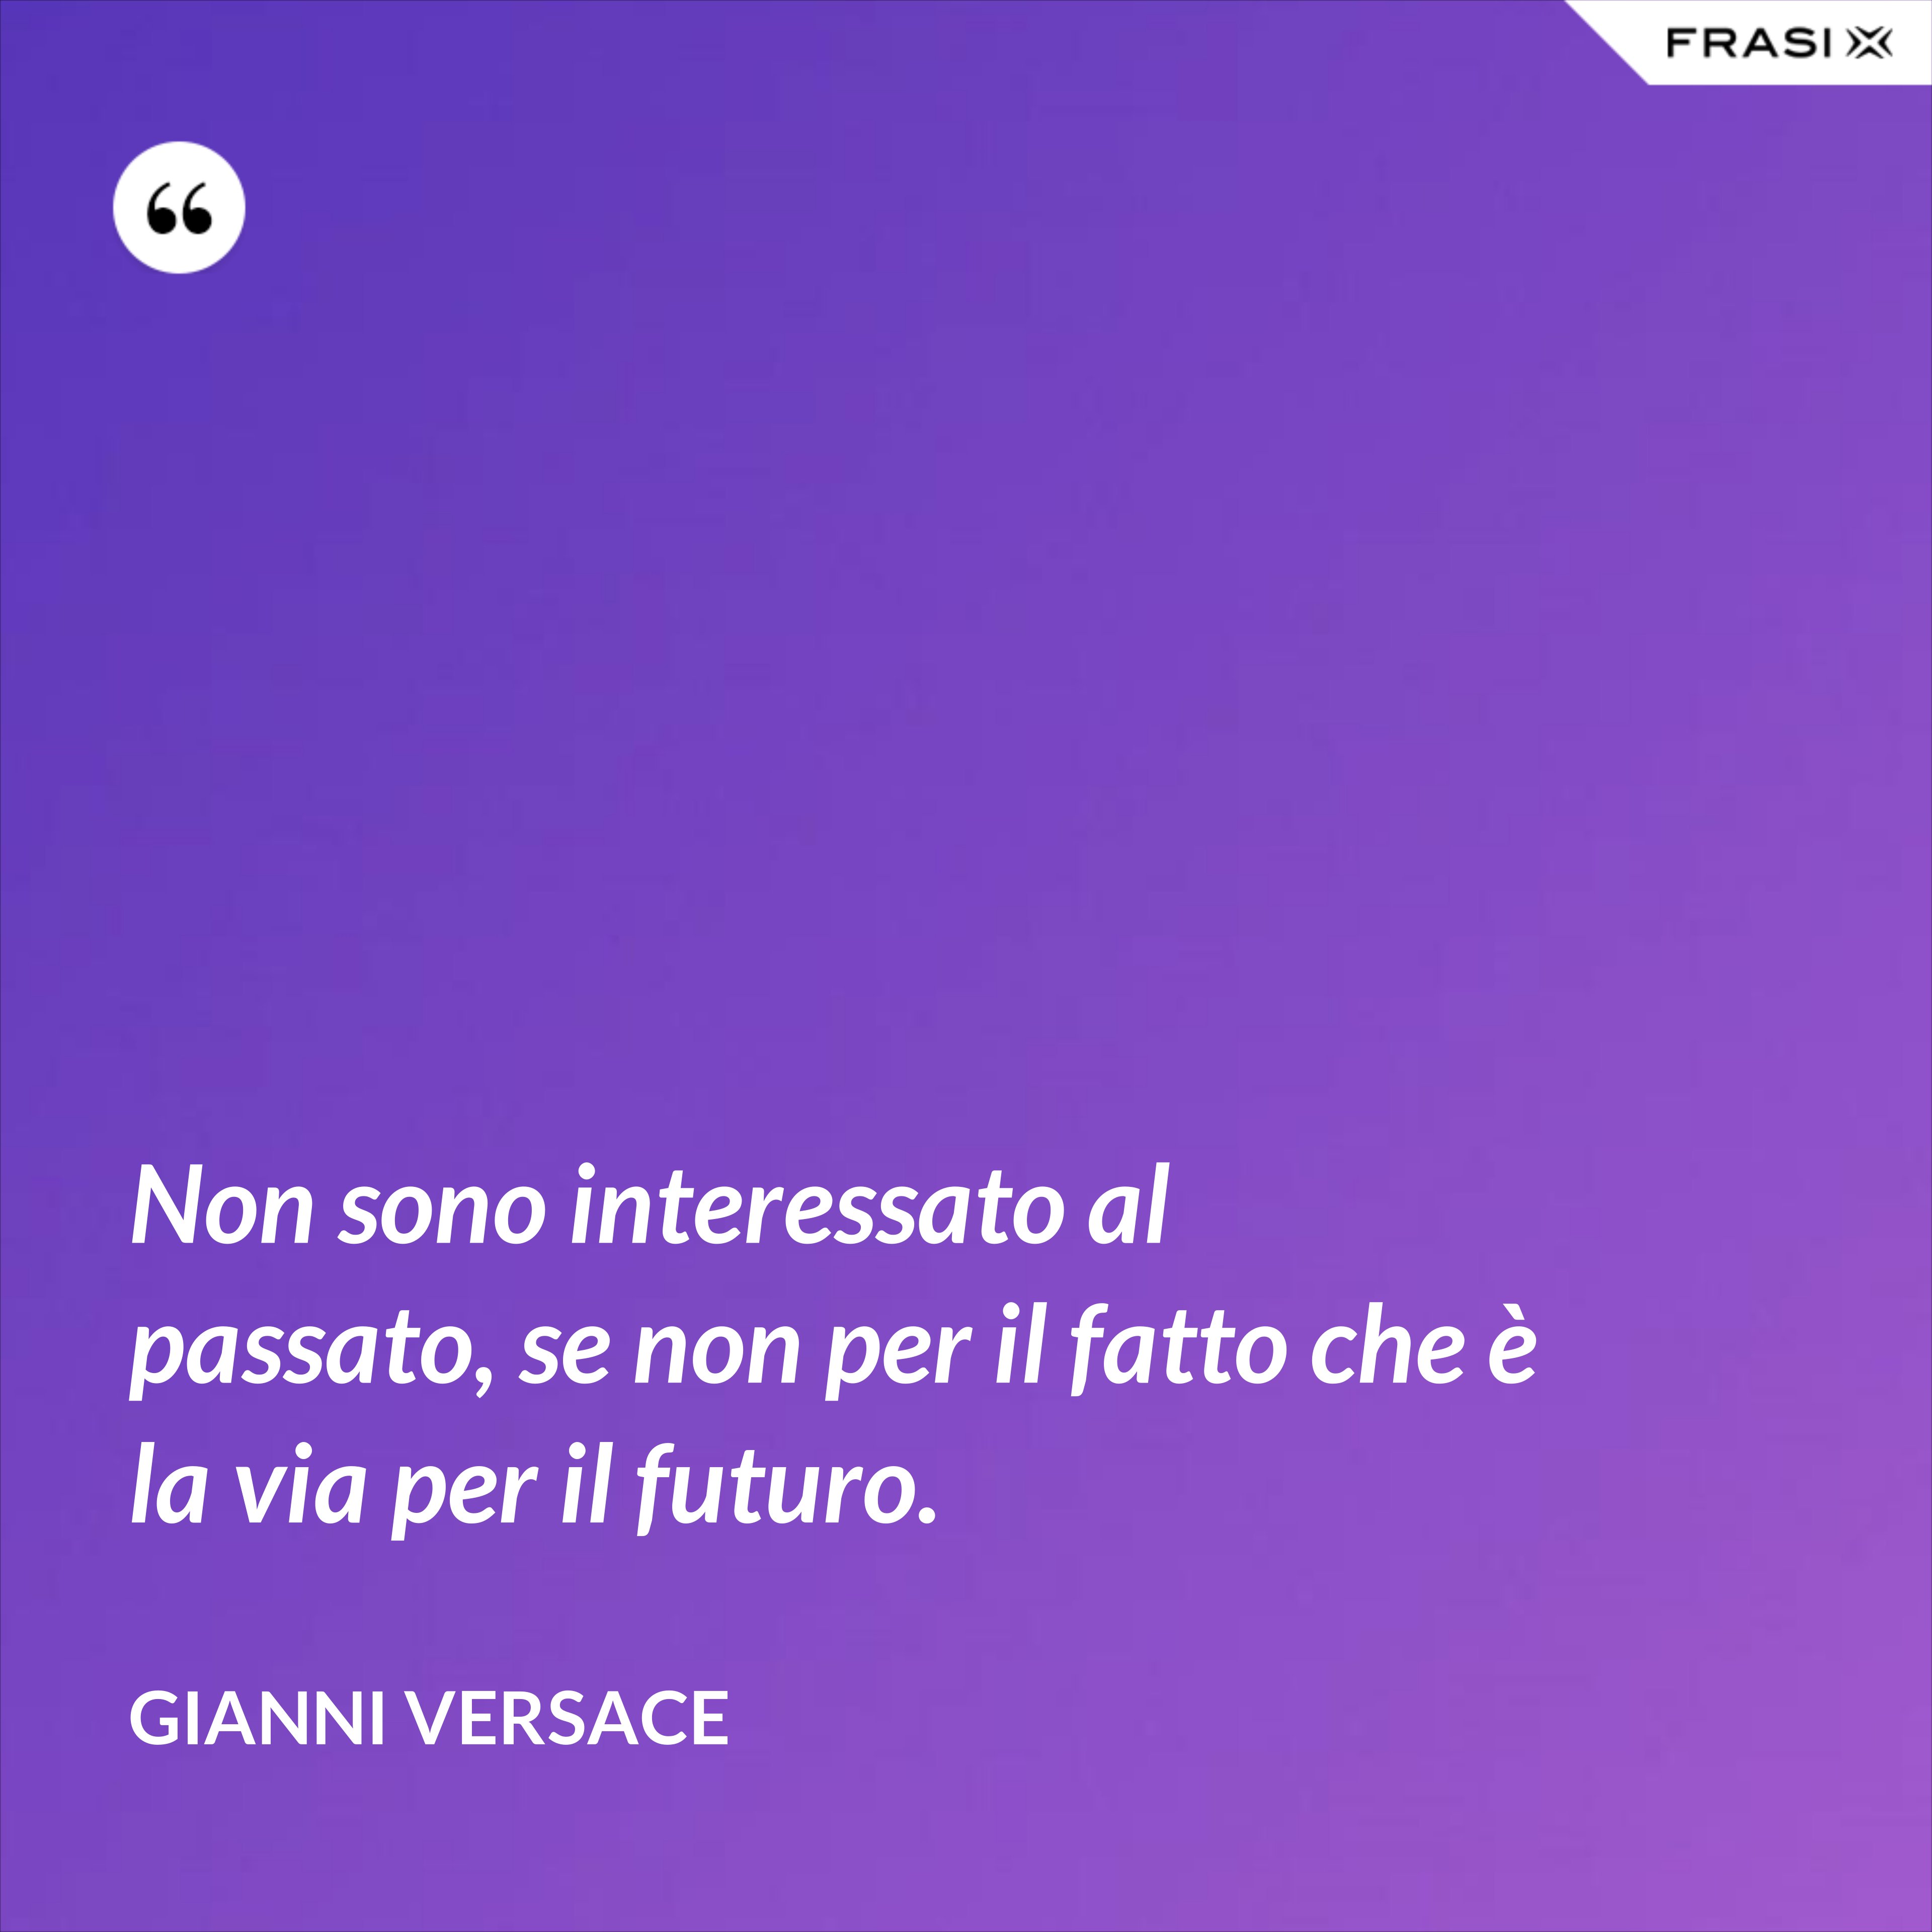 Non sono interessato al passato, se non per il fatto che è la via per il futuro. - Gianni Versace